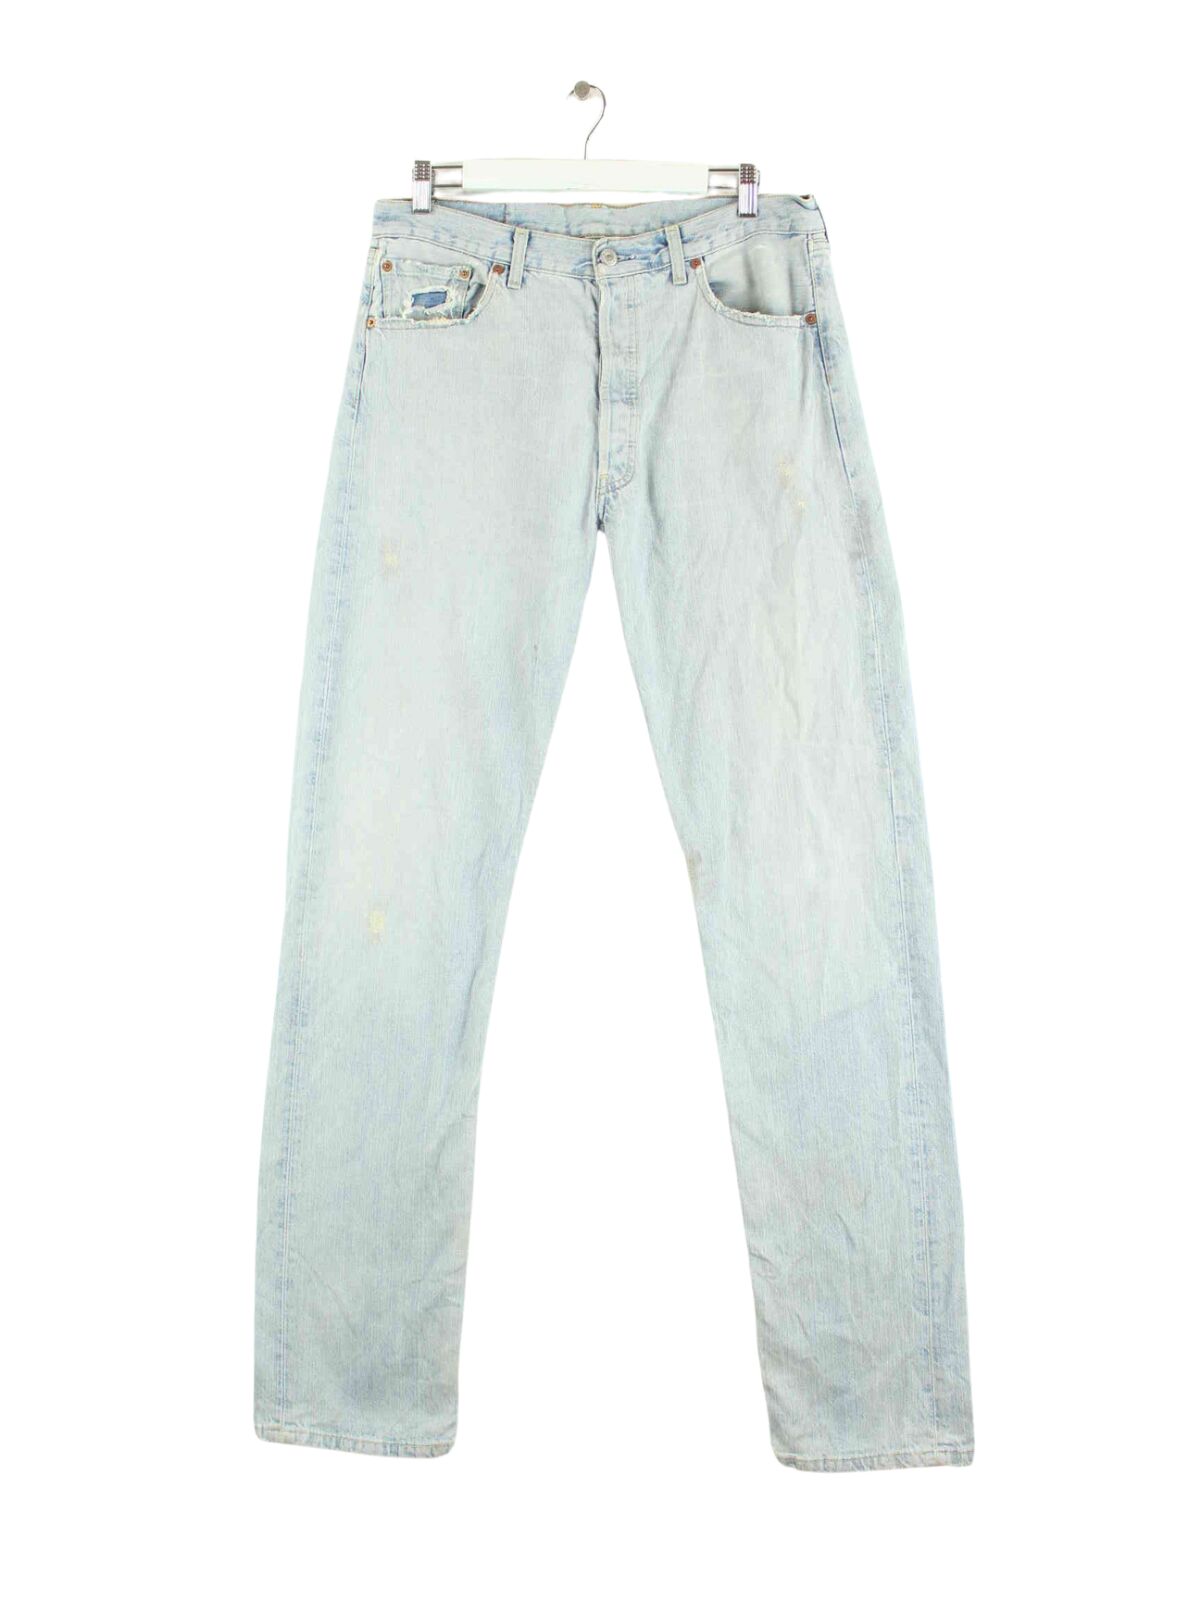 Levi's 1991 Vintage 501 Jeans Blau W32 L38 (front image)